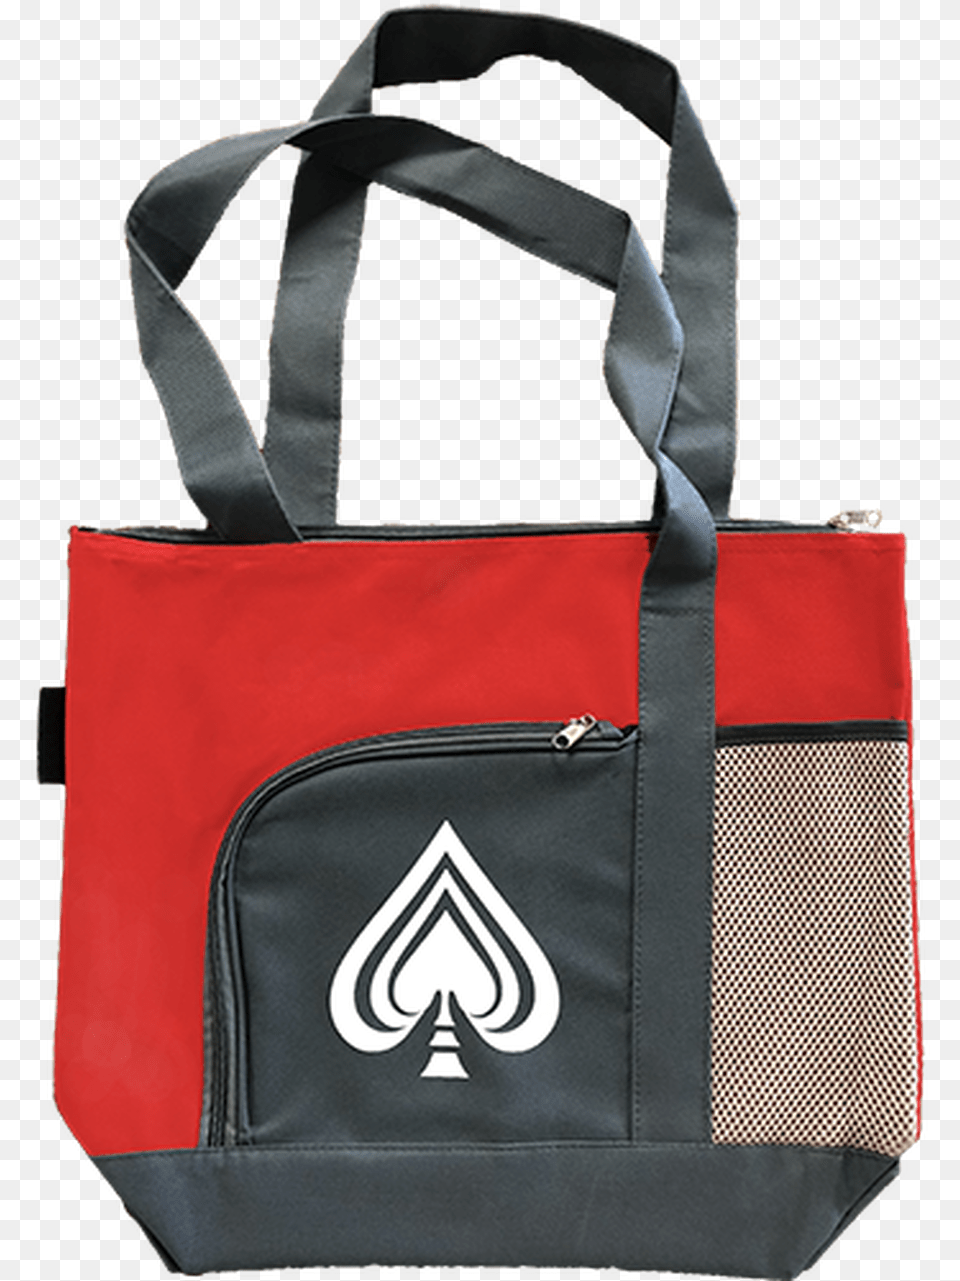 Ace Of Spades Tote Bag Shoulder Bag, Accessories, Handbag, Tote Bag, Purse Png